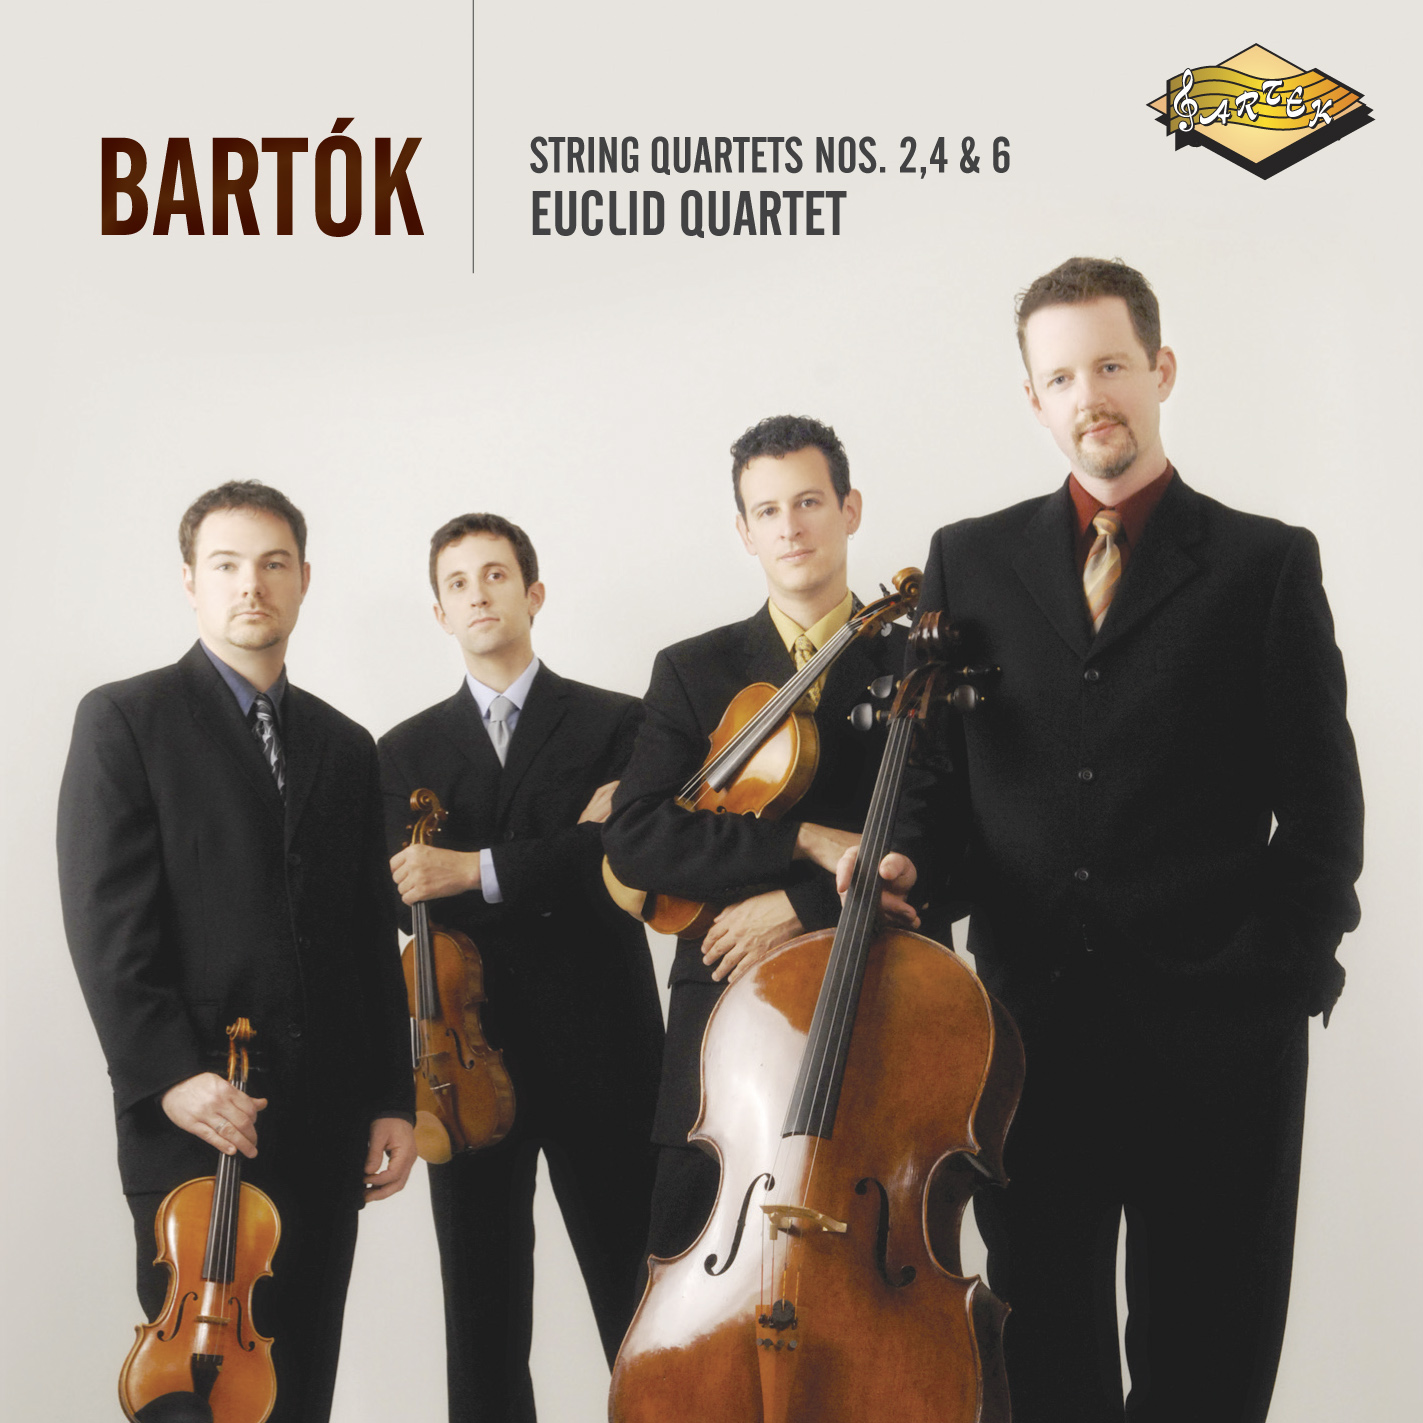 Bartok, String Quartets Nos. 2, 4, & 6